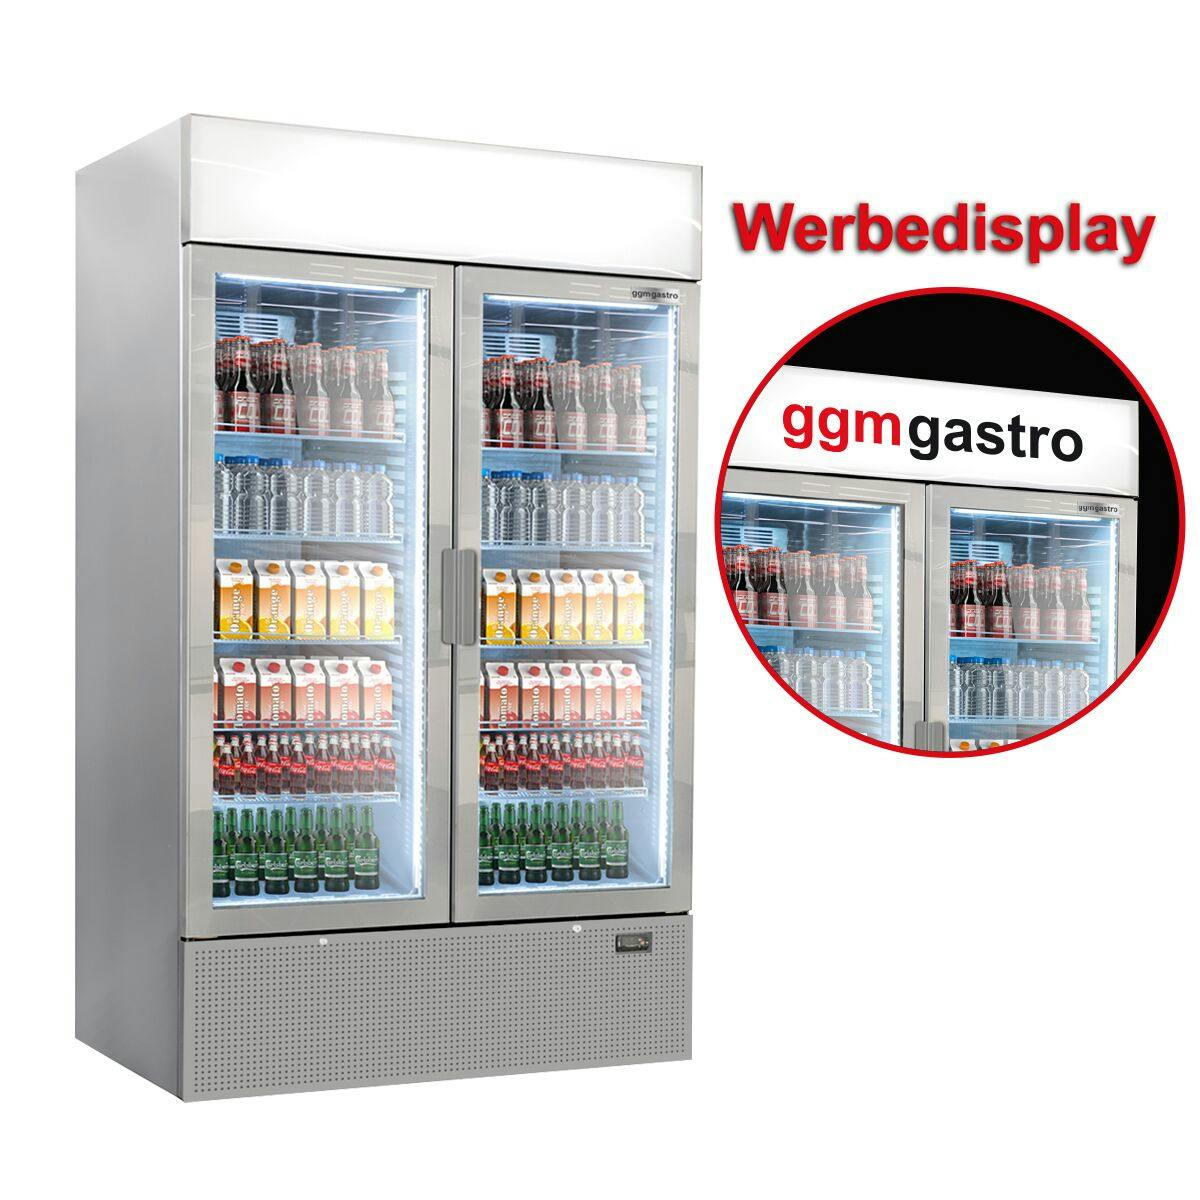 (2 pieces) Beverage refrigerator - 2096 litres (total) - grey